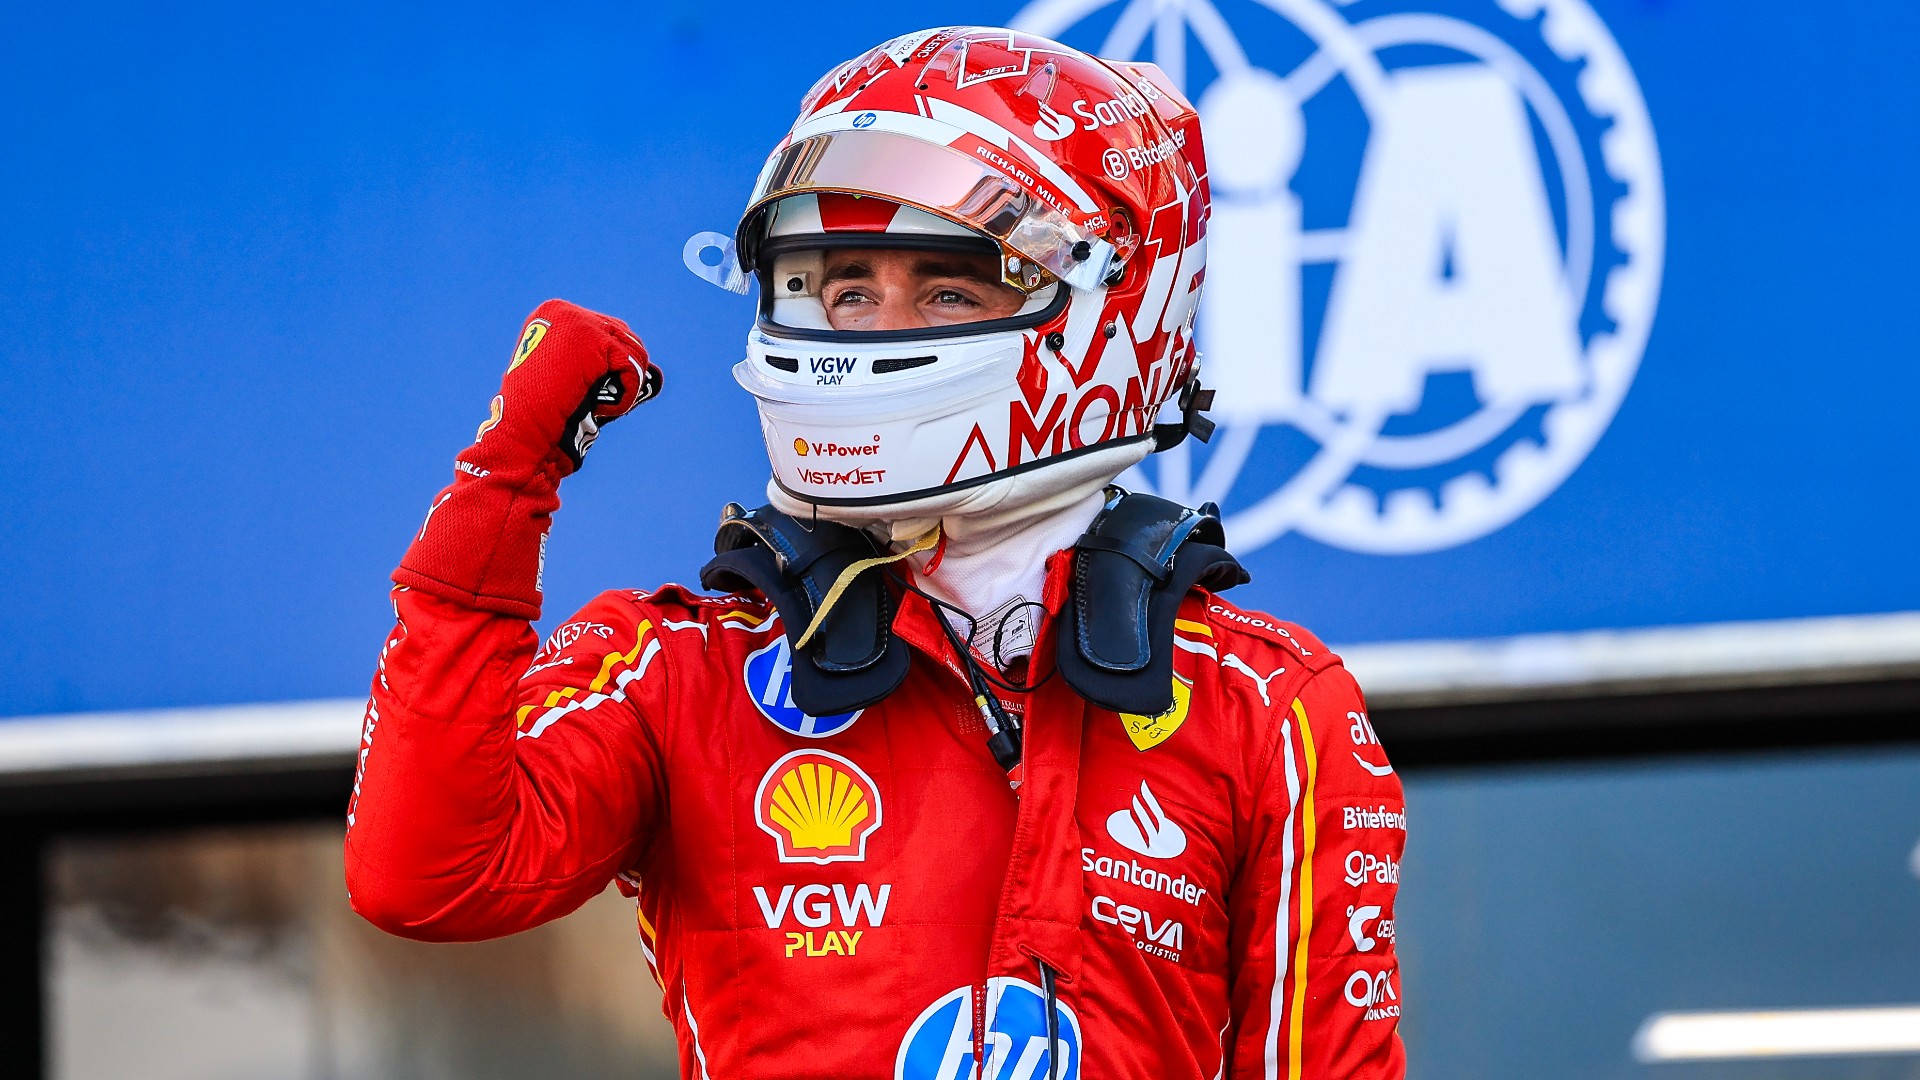 Leclerc claims maiden Monaco GP win